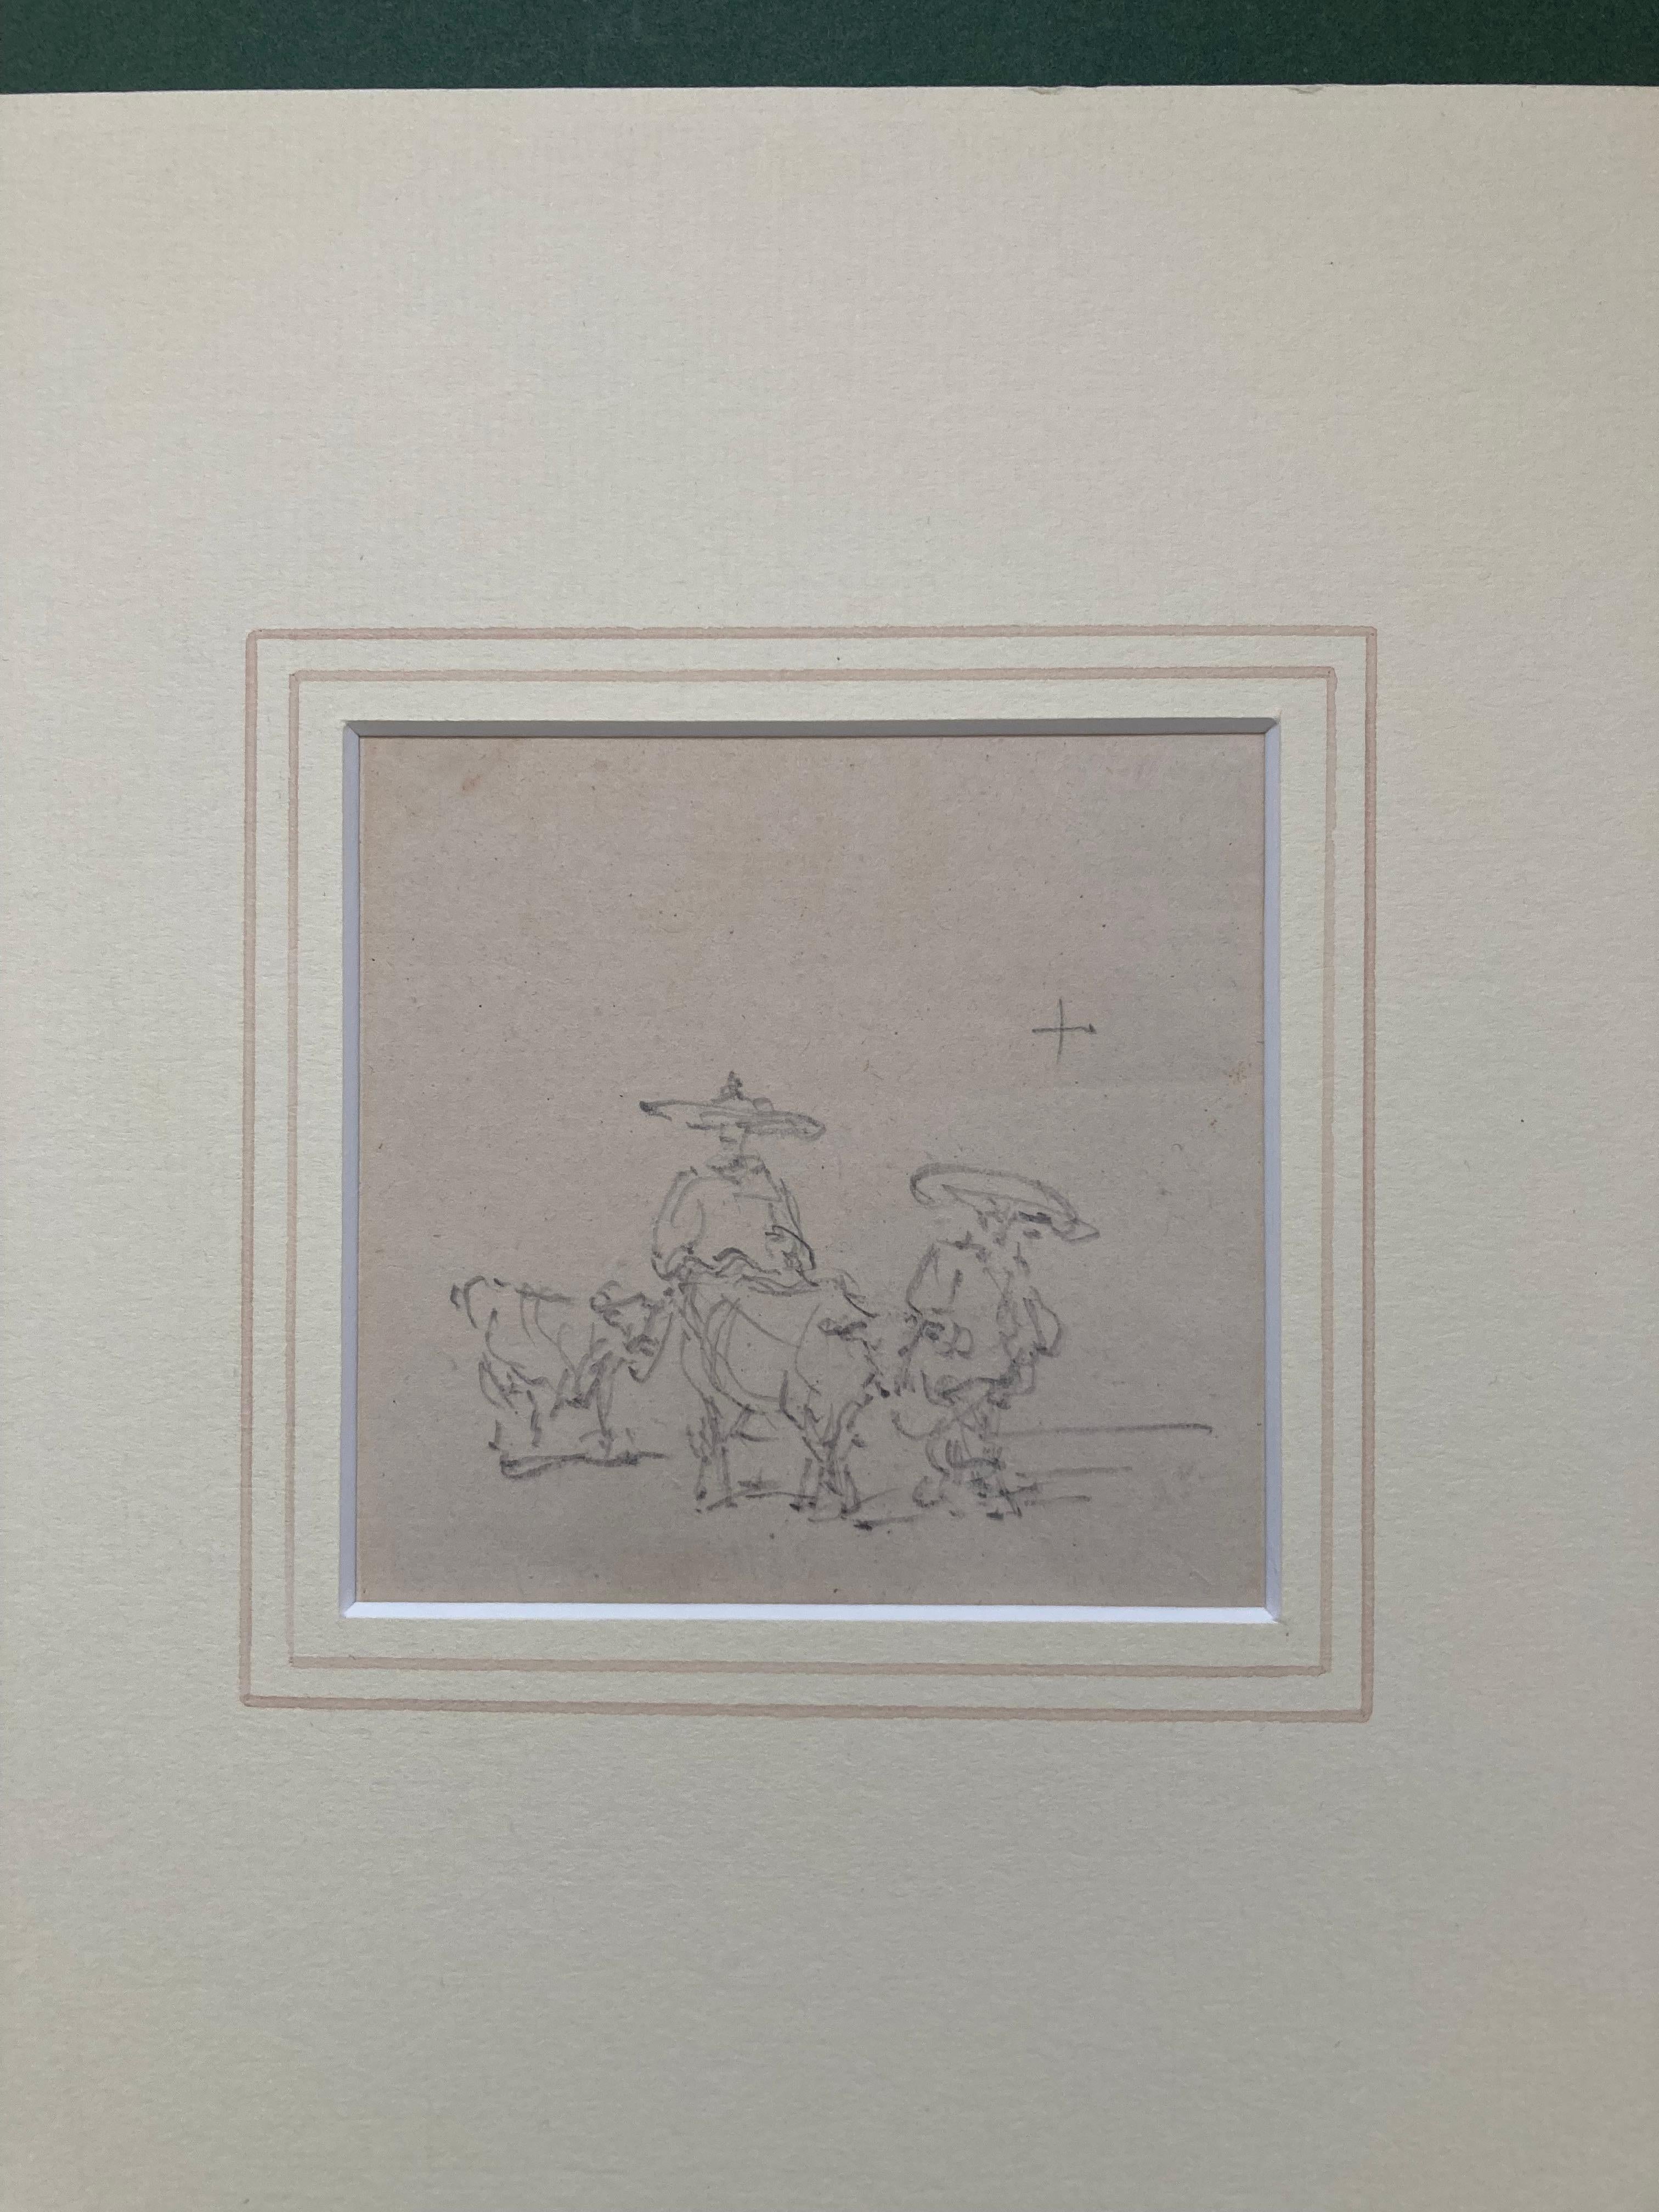 Eine schön gezeichnete Bleistiftstudie chinesischer Figuren von einem der großen topografischen Meister des frühen 19. Jahrhunderts.

George Chinnery (1774-1852)
Chinesische Persönlichkeiten in der Viehwirtschaft
Bezeichnet mit der Handschrift des